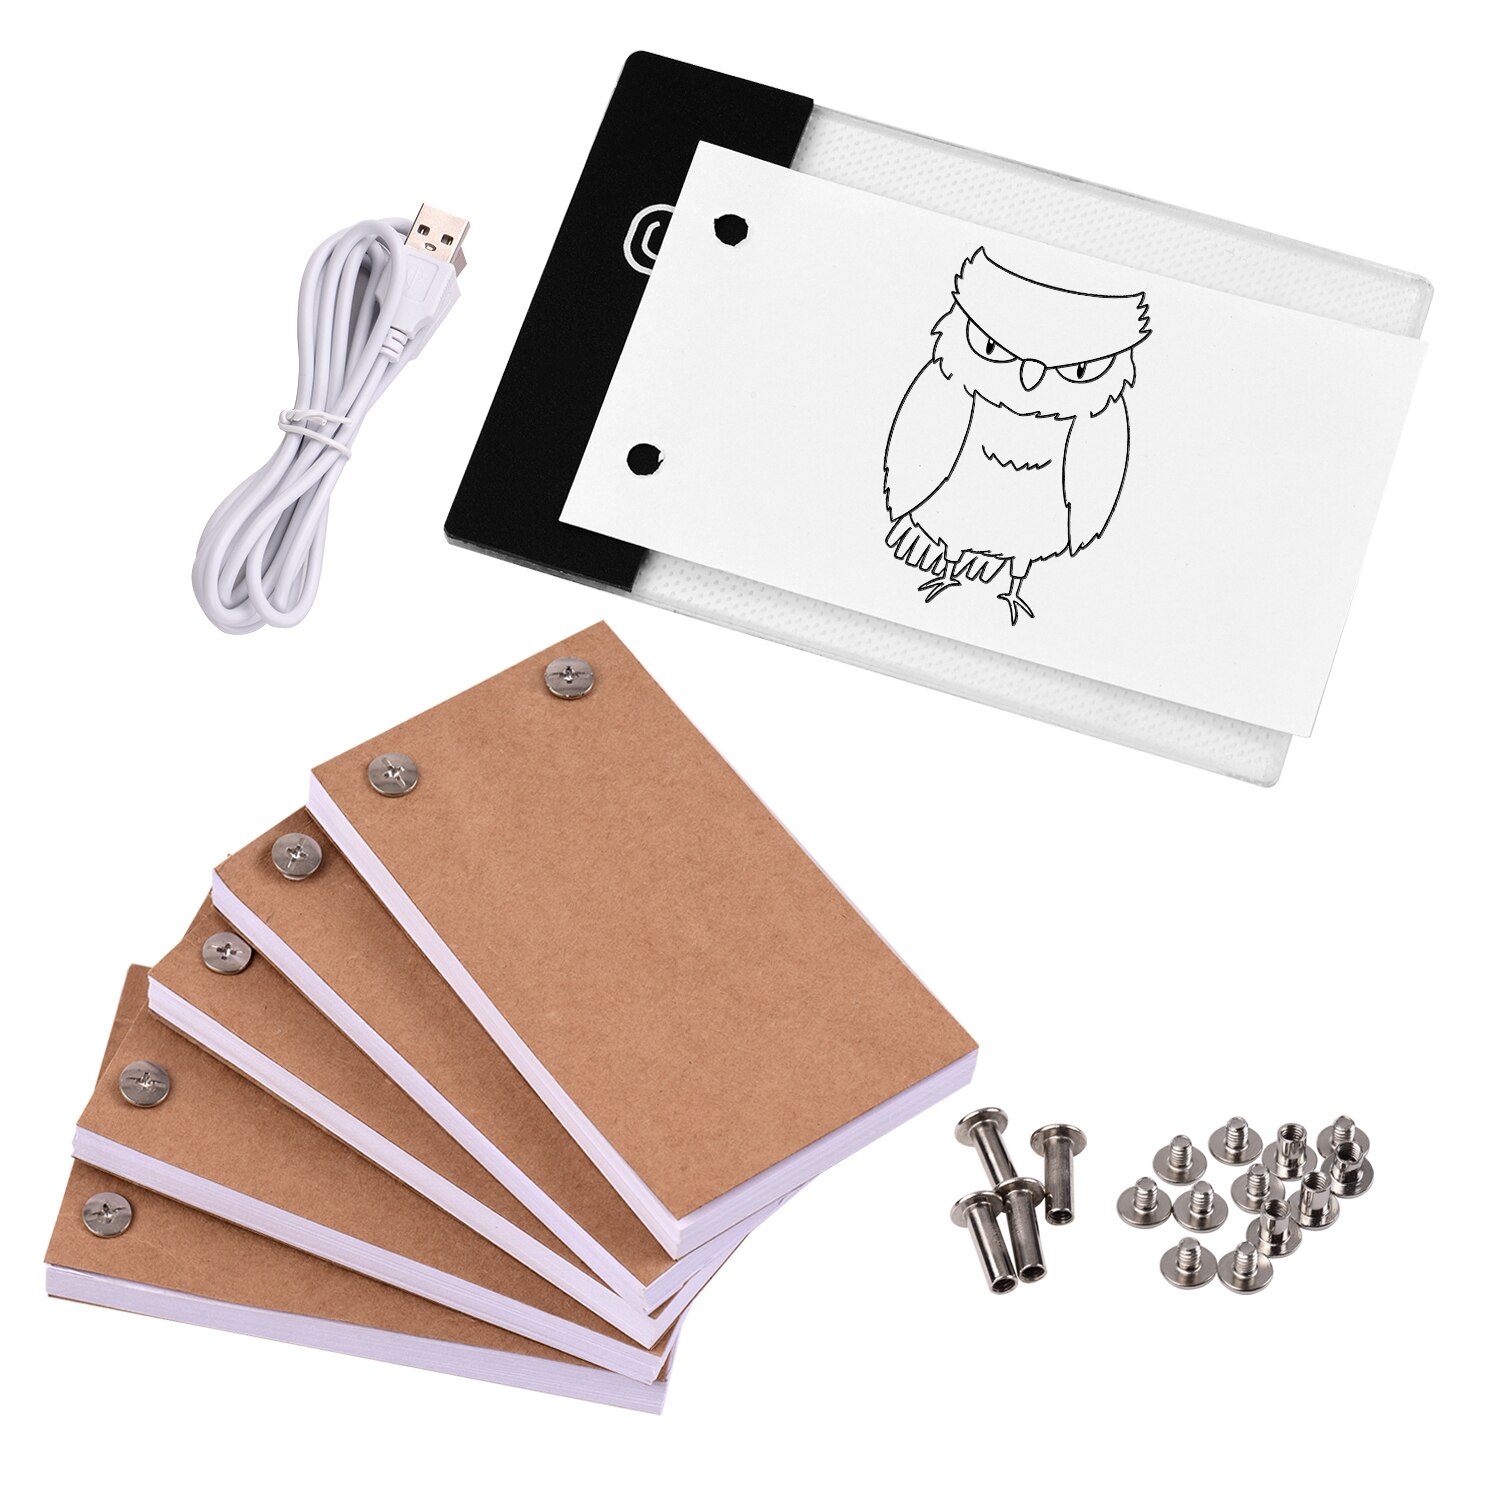 300 Sheets Tekening Papier Flip Boek Met Binding Schroef En Licht Pad Led Licht Box Tablet Voor Tekening Tracing Animatie schetsen